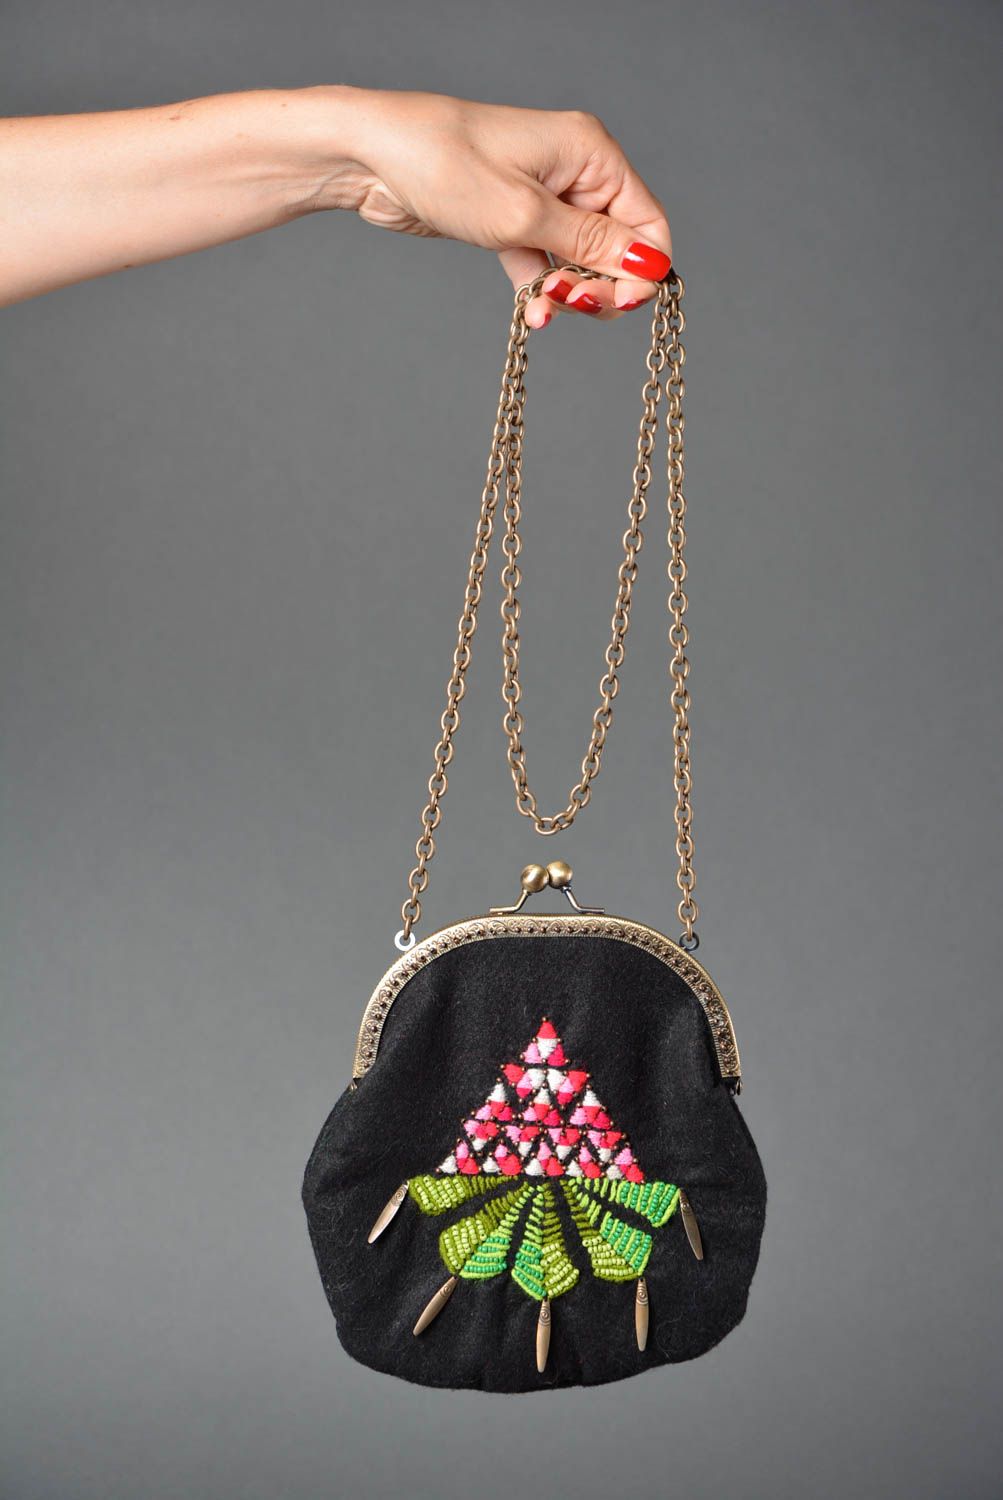 Handmade bag designer bags for women gift ideas unusual gift for women photo 5